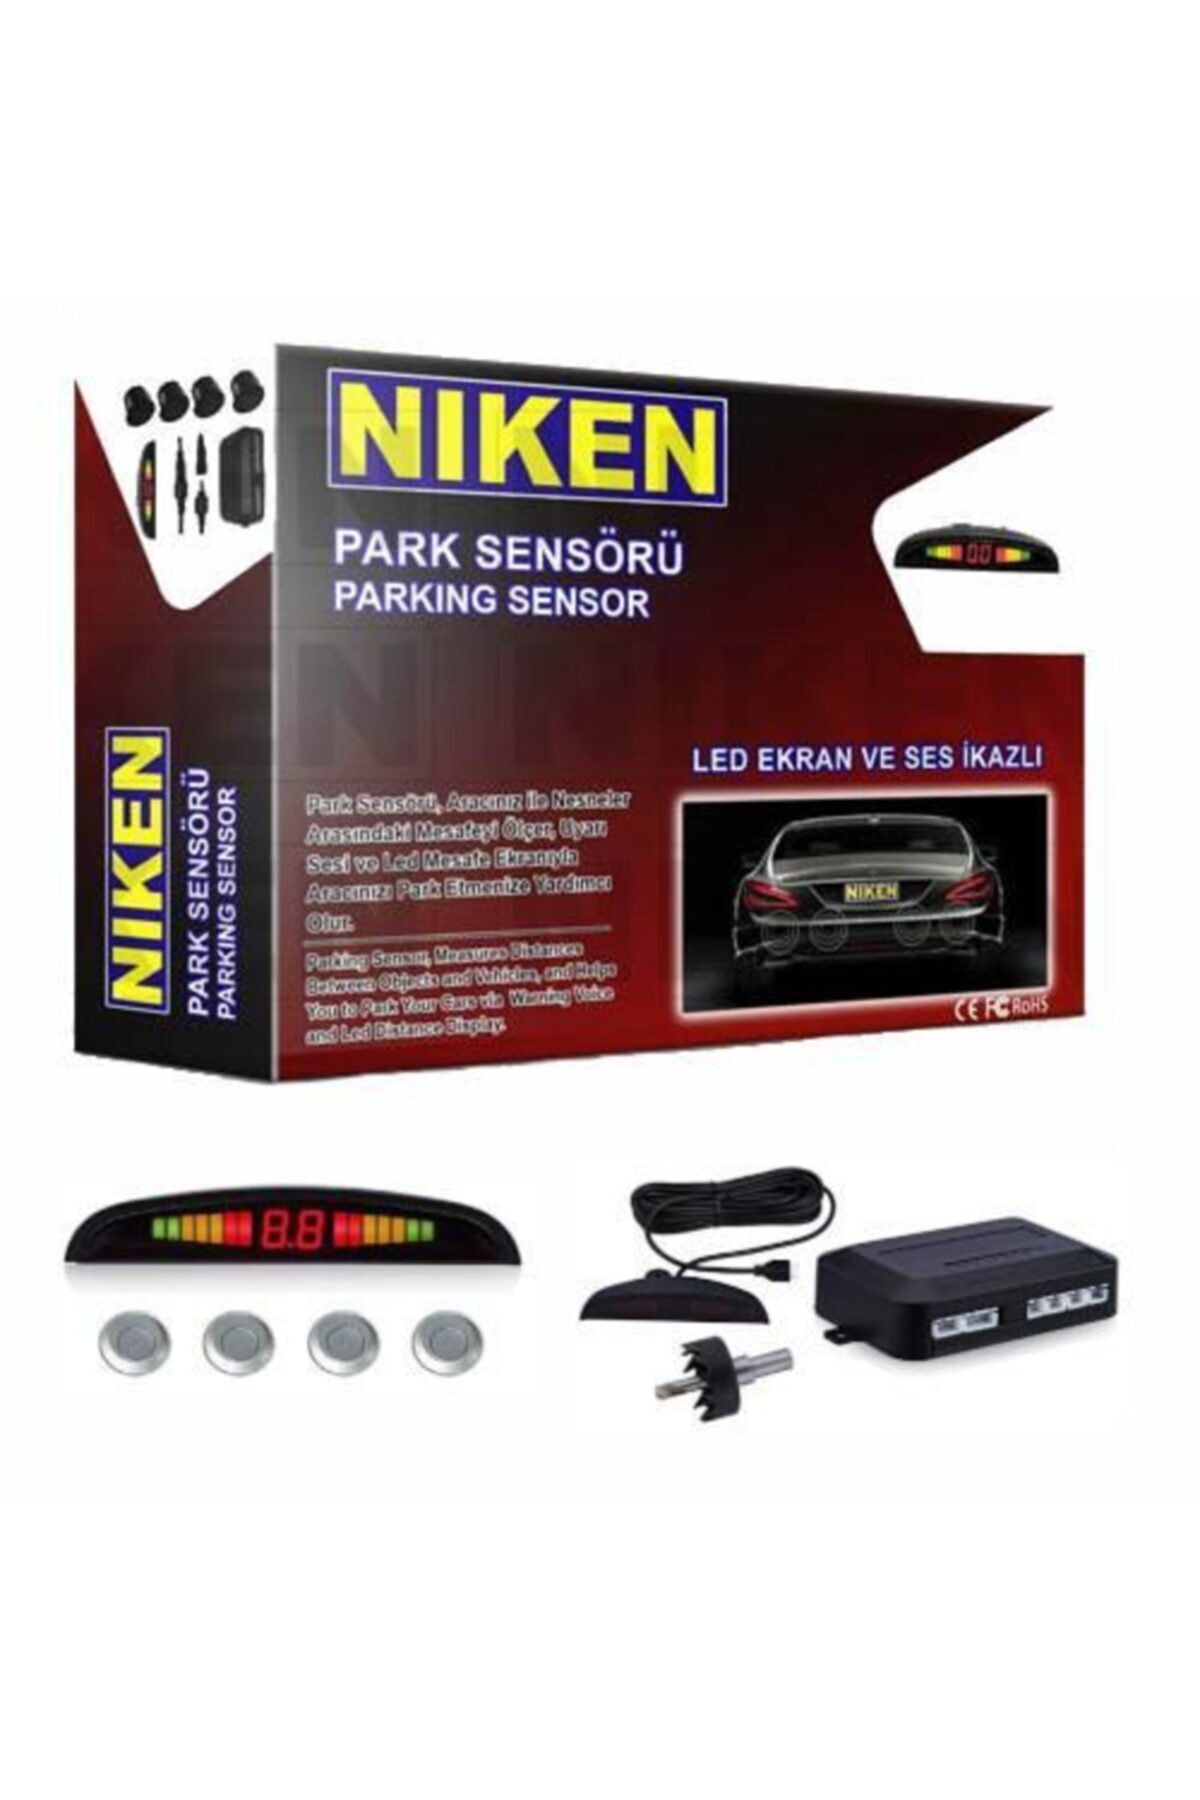 Niken Park Sensörü Gri Ekranlı Ve Ses Ikazlı Garantili